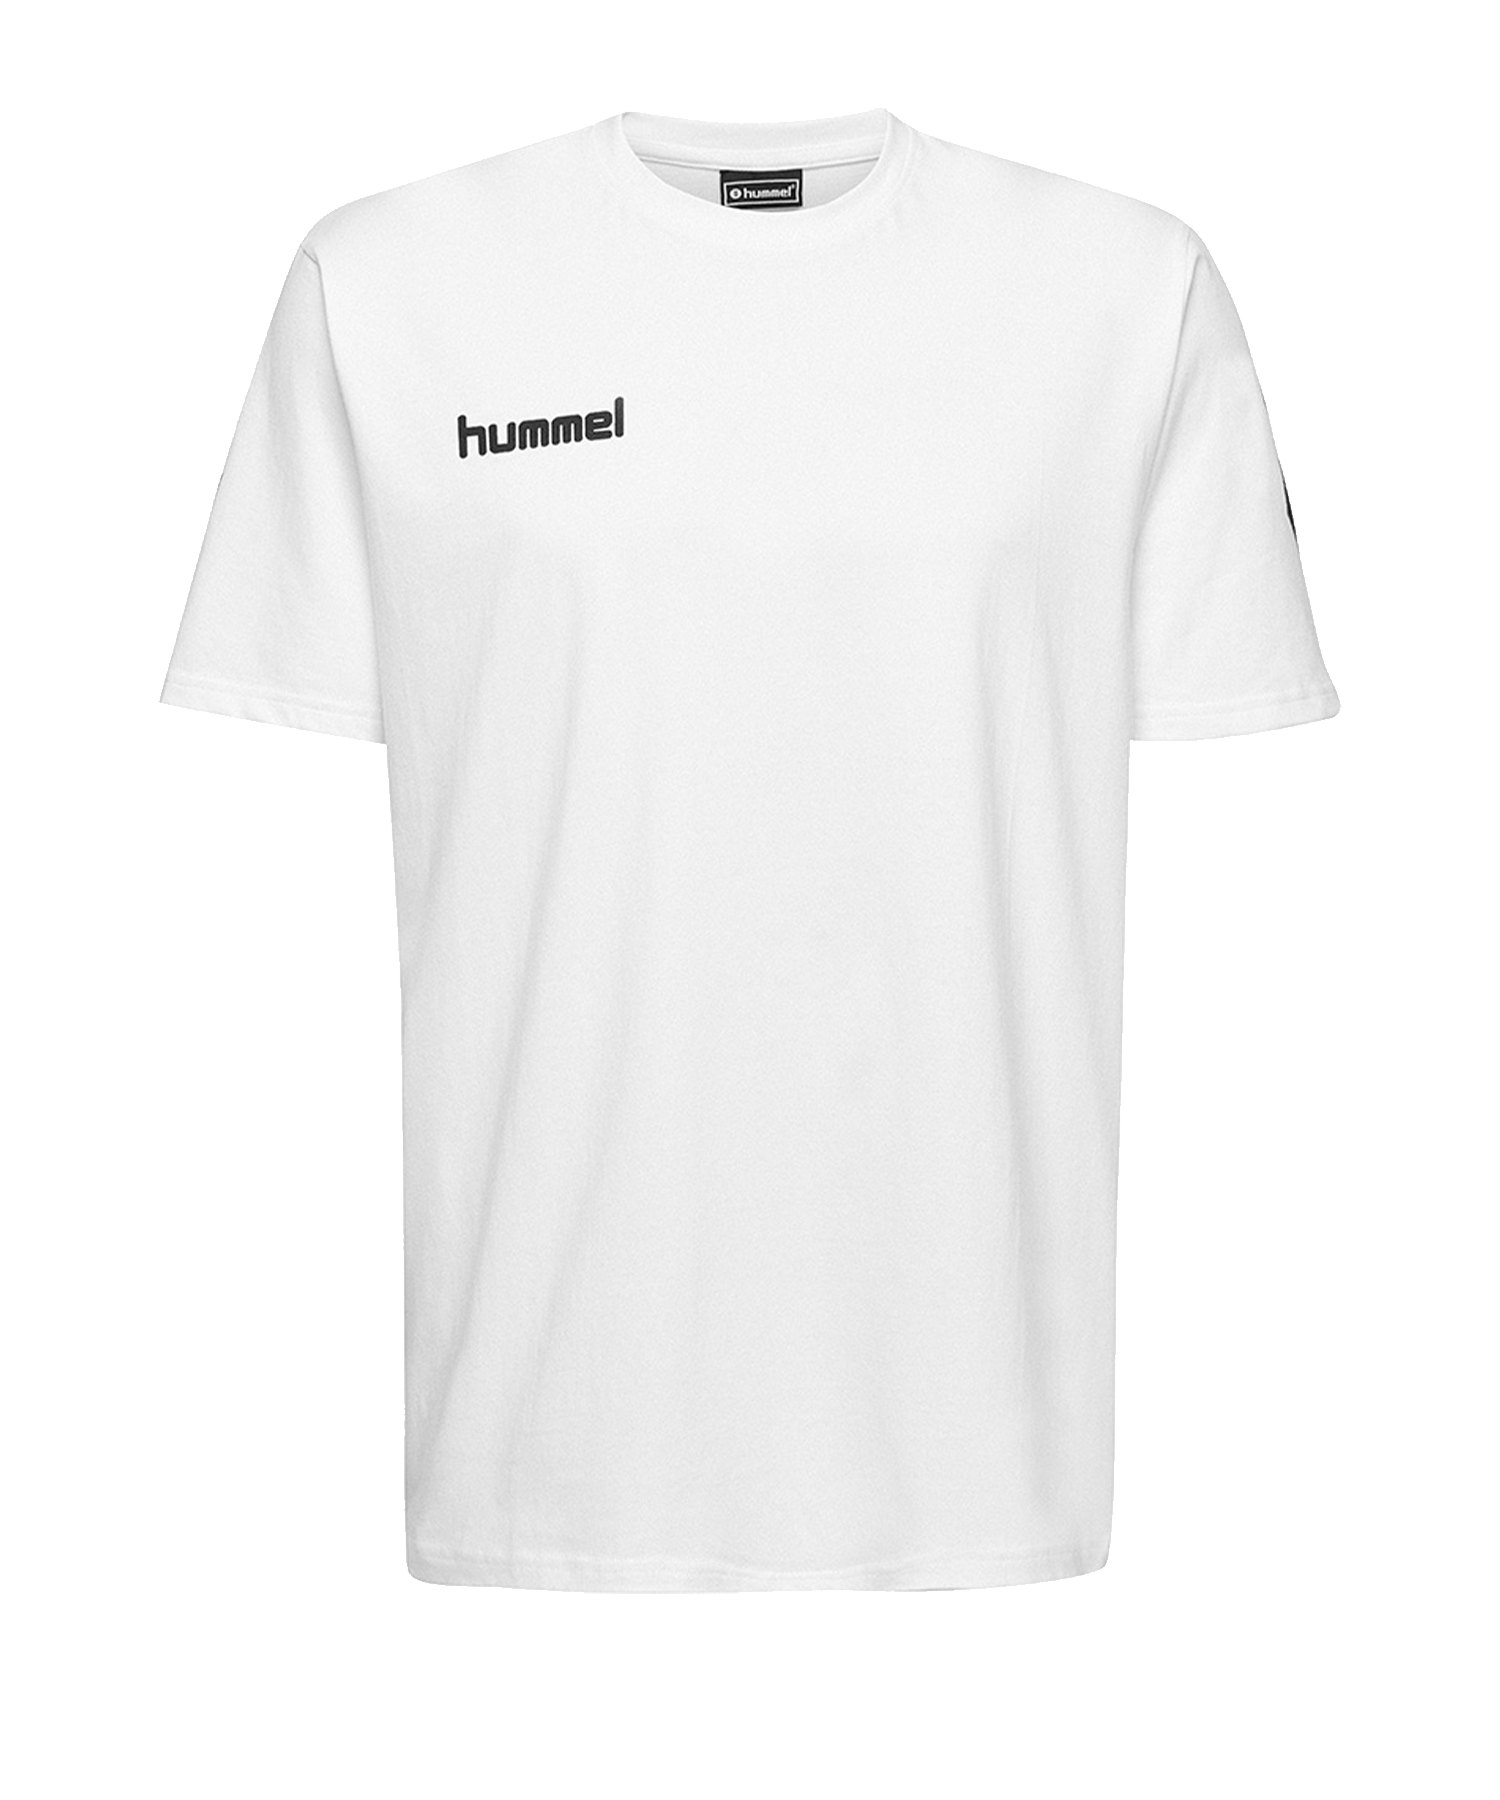 Hummel Cotton T-Shirt Kids Weiss F9001 - Weiss